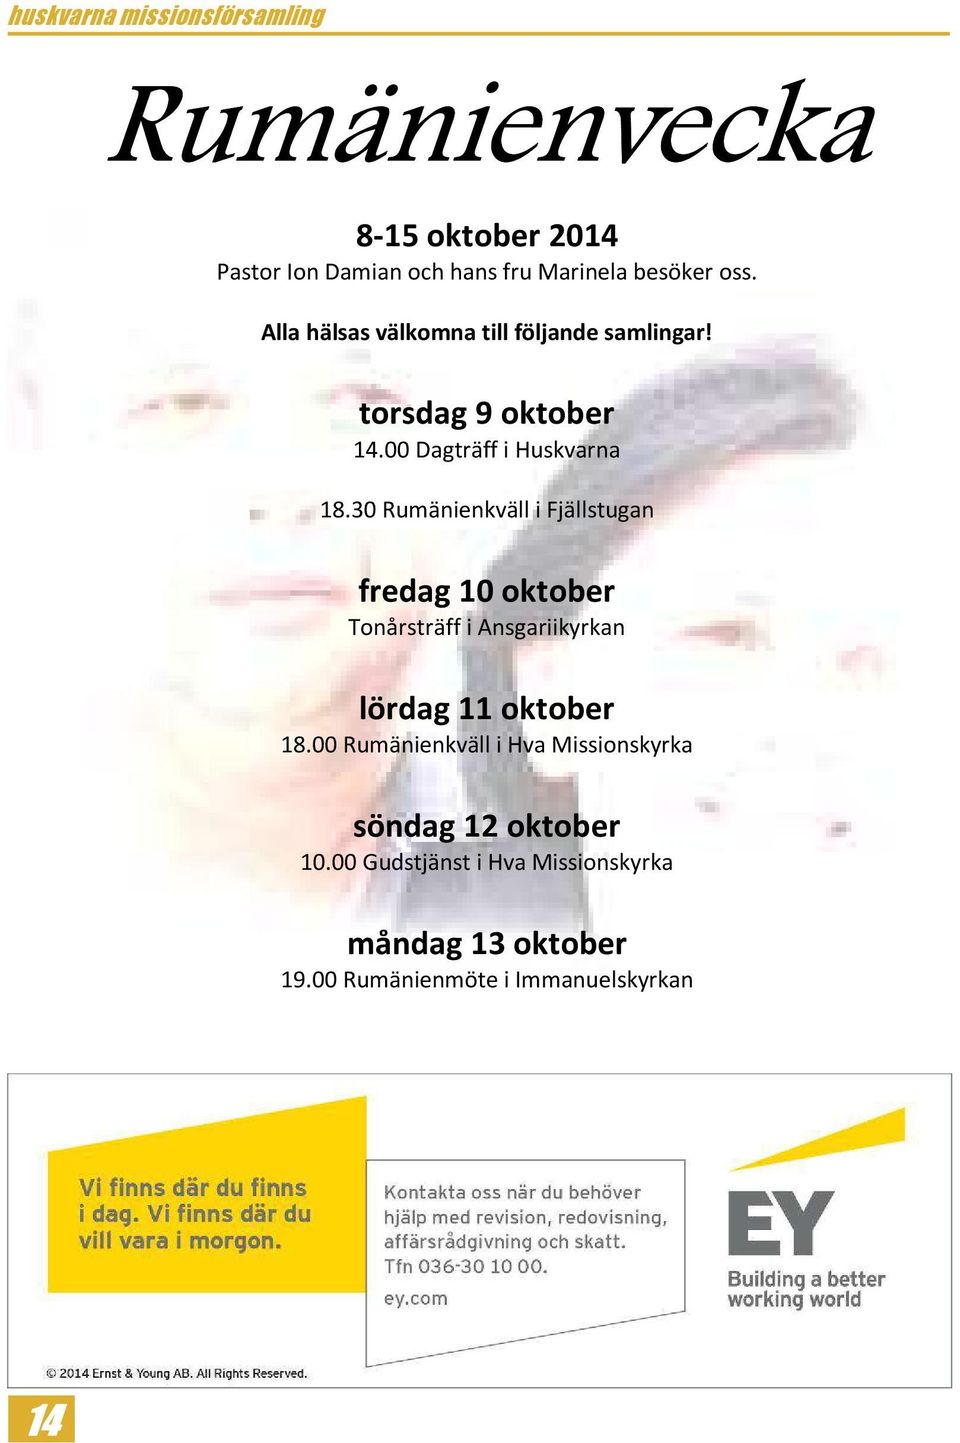 30 Rumänienkväll i Fjällstugan fredag 10 oktober Tonårsträff i Ansgariikyrkan lördag 11 oktober 18.